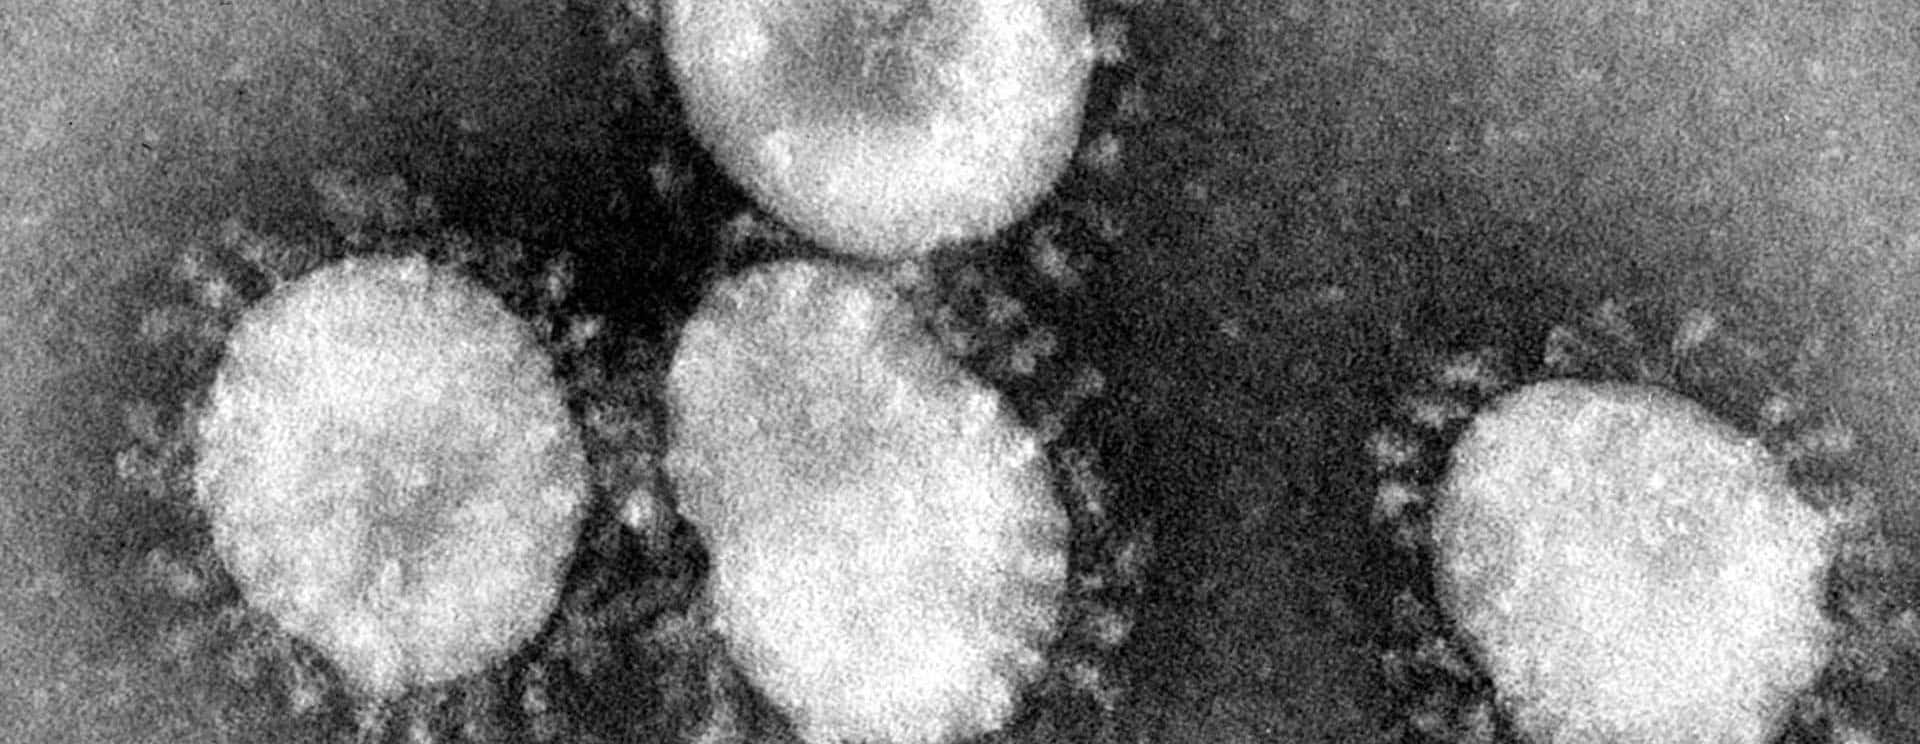 coronaviruses-jpg-27